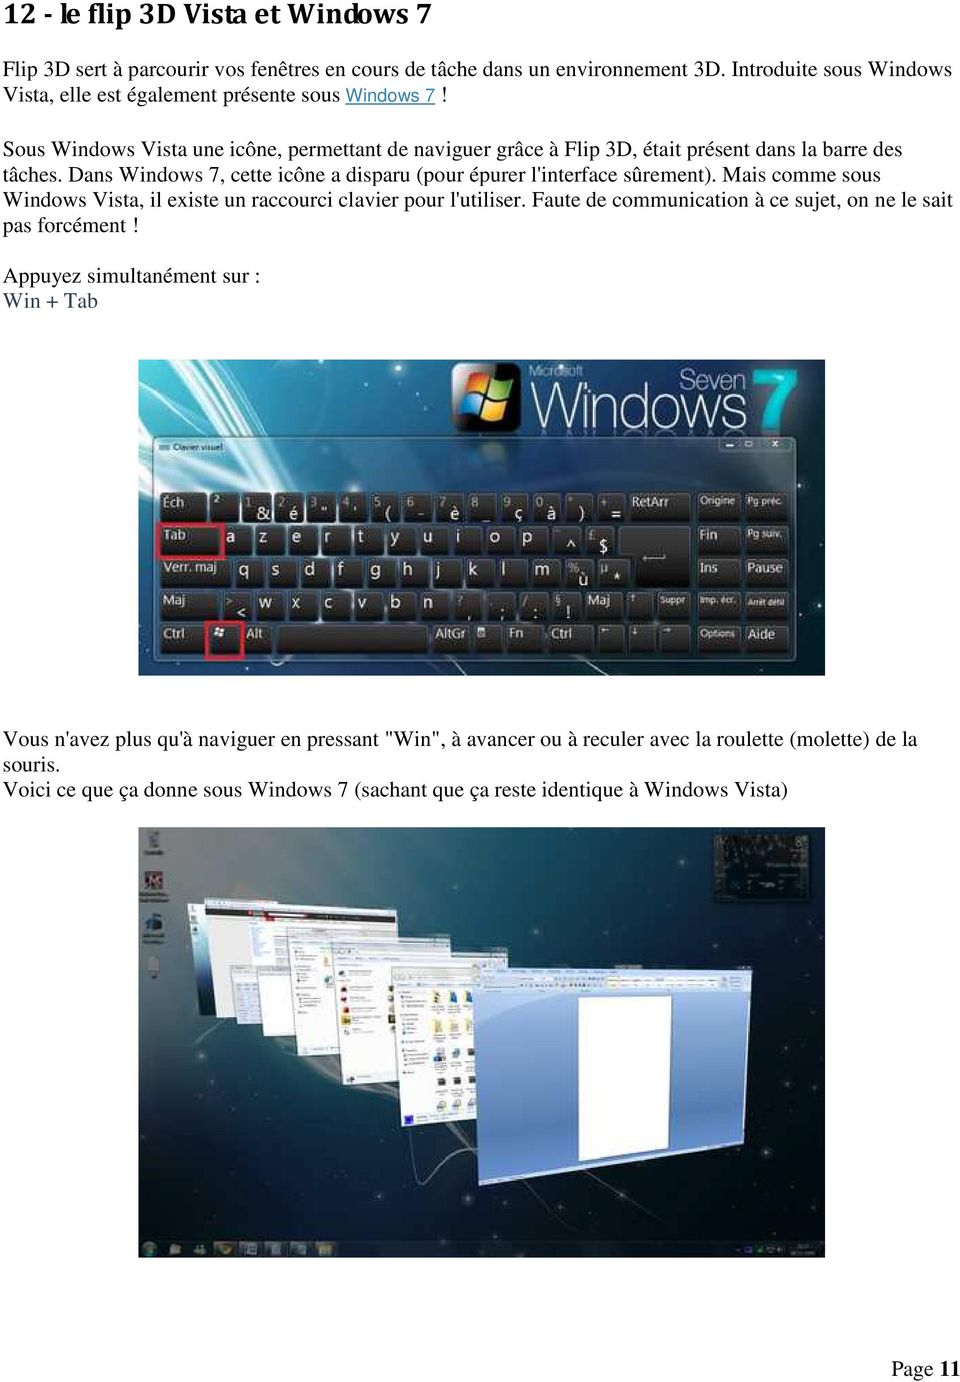 Mais comme sous Windows Vista, il existe un raccourci clavier pour l'utiliser. Faute de communication à ce sujet, on ne le sait pas forcément!